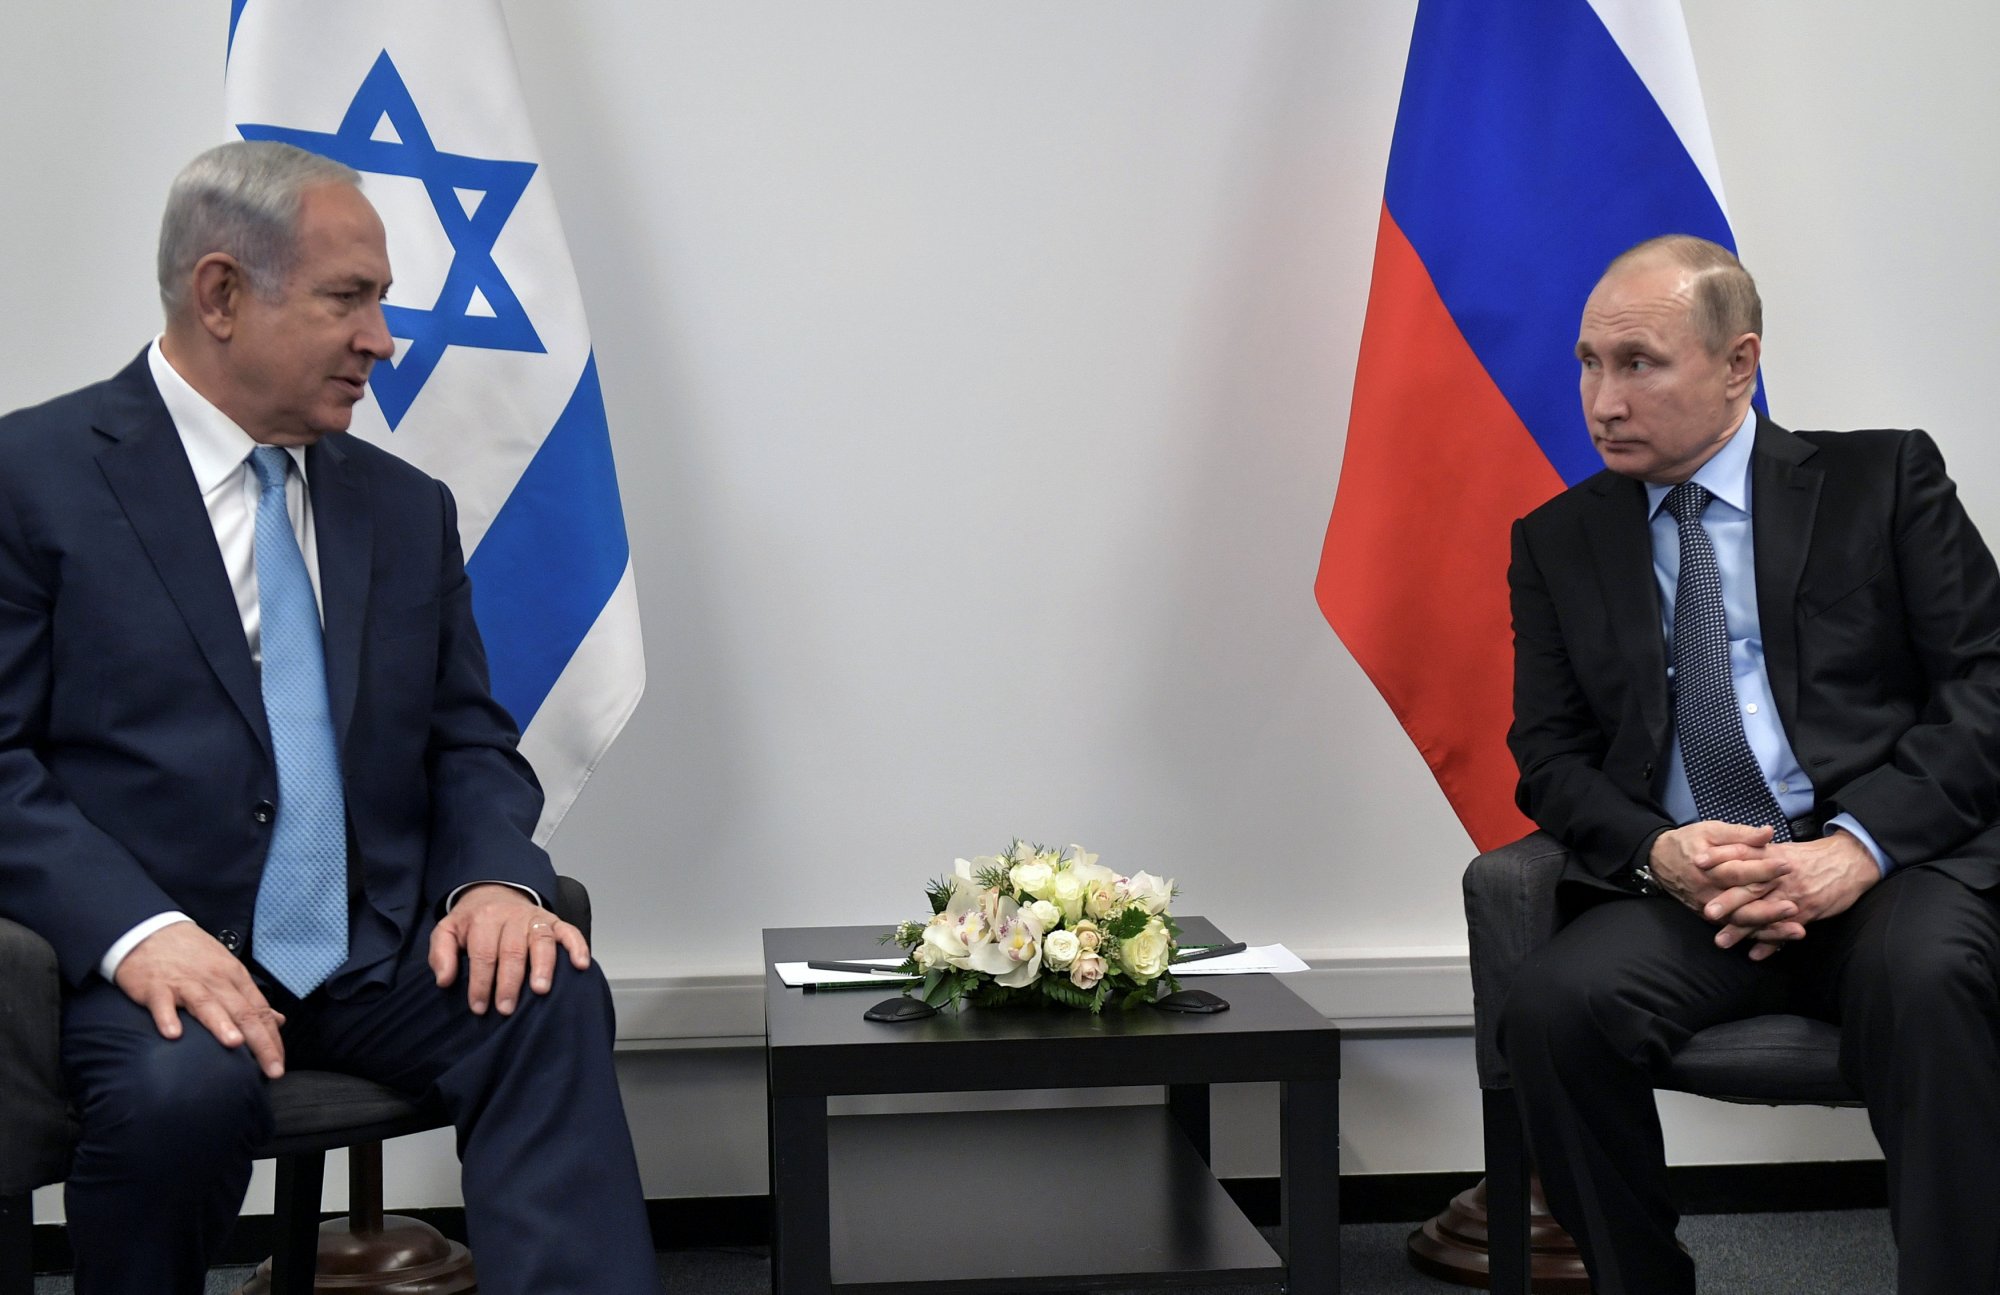 Πόλεμος Ισραήλ - Χαμάς: Επικοινωνία Πούτιν - Νετανιάχου - «Η Ρωσία έτοιμη να βοηθήσει στο τέλος της διαμάχης»